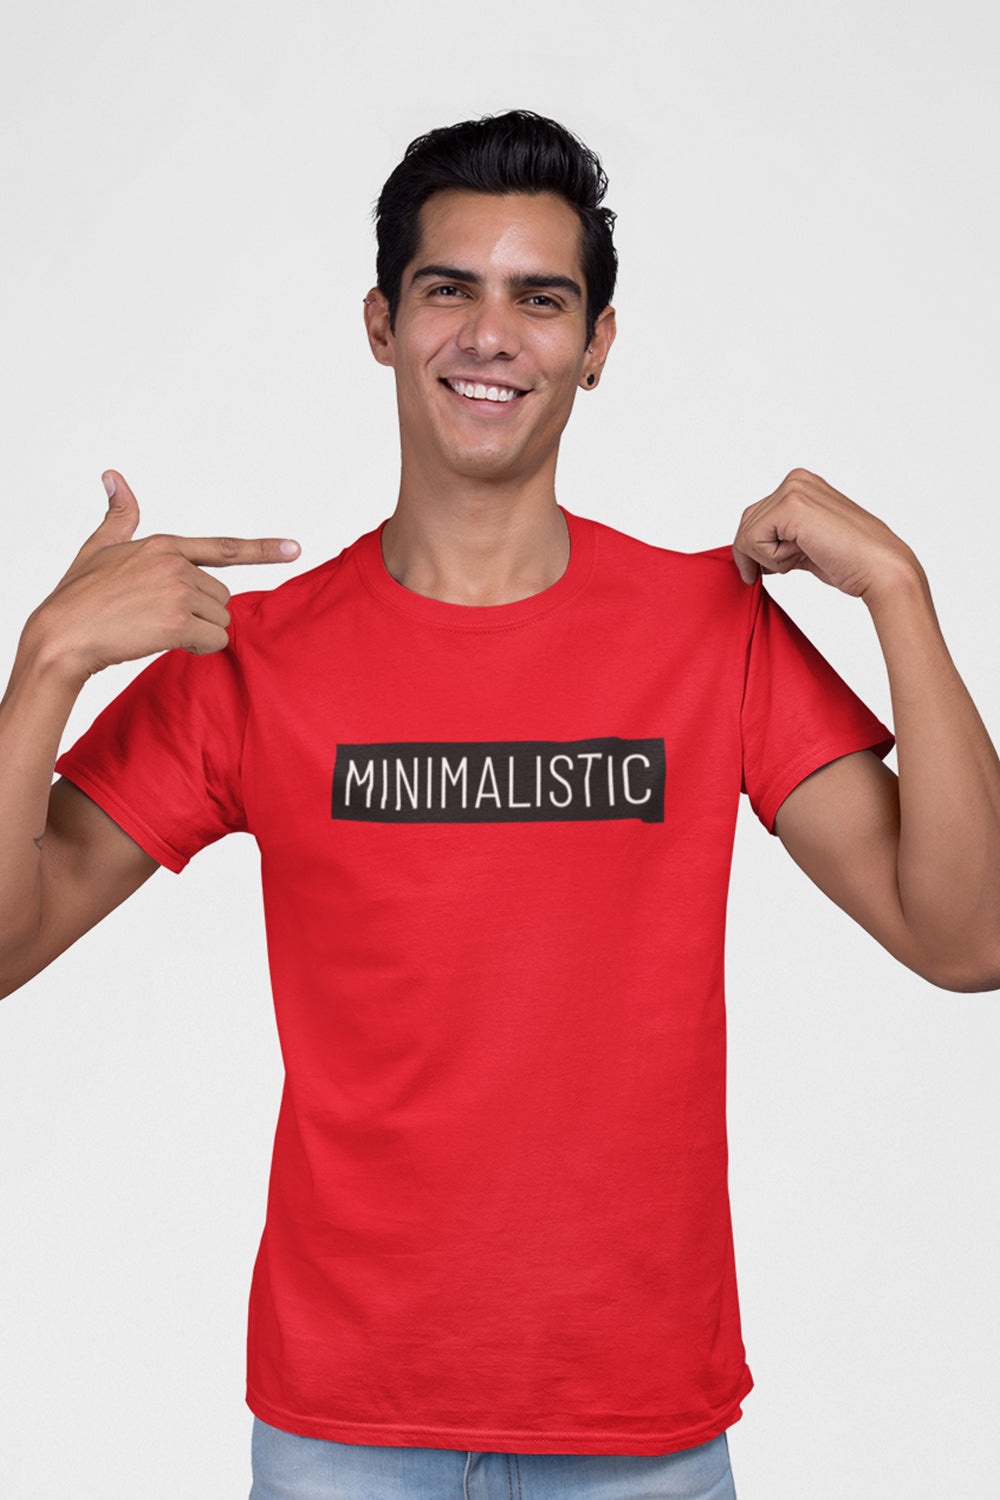 Minimalistic Graphic Printed Red Tshirt